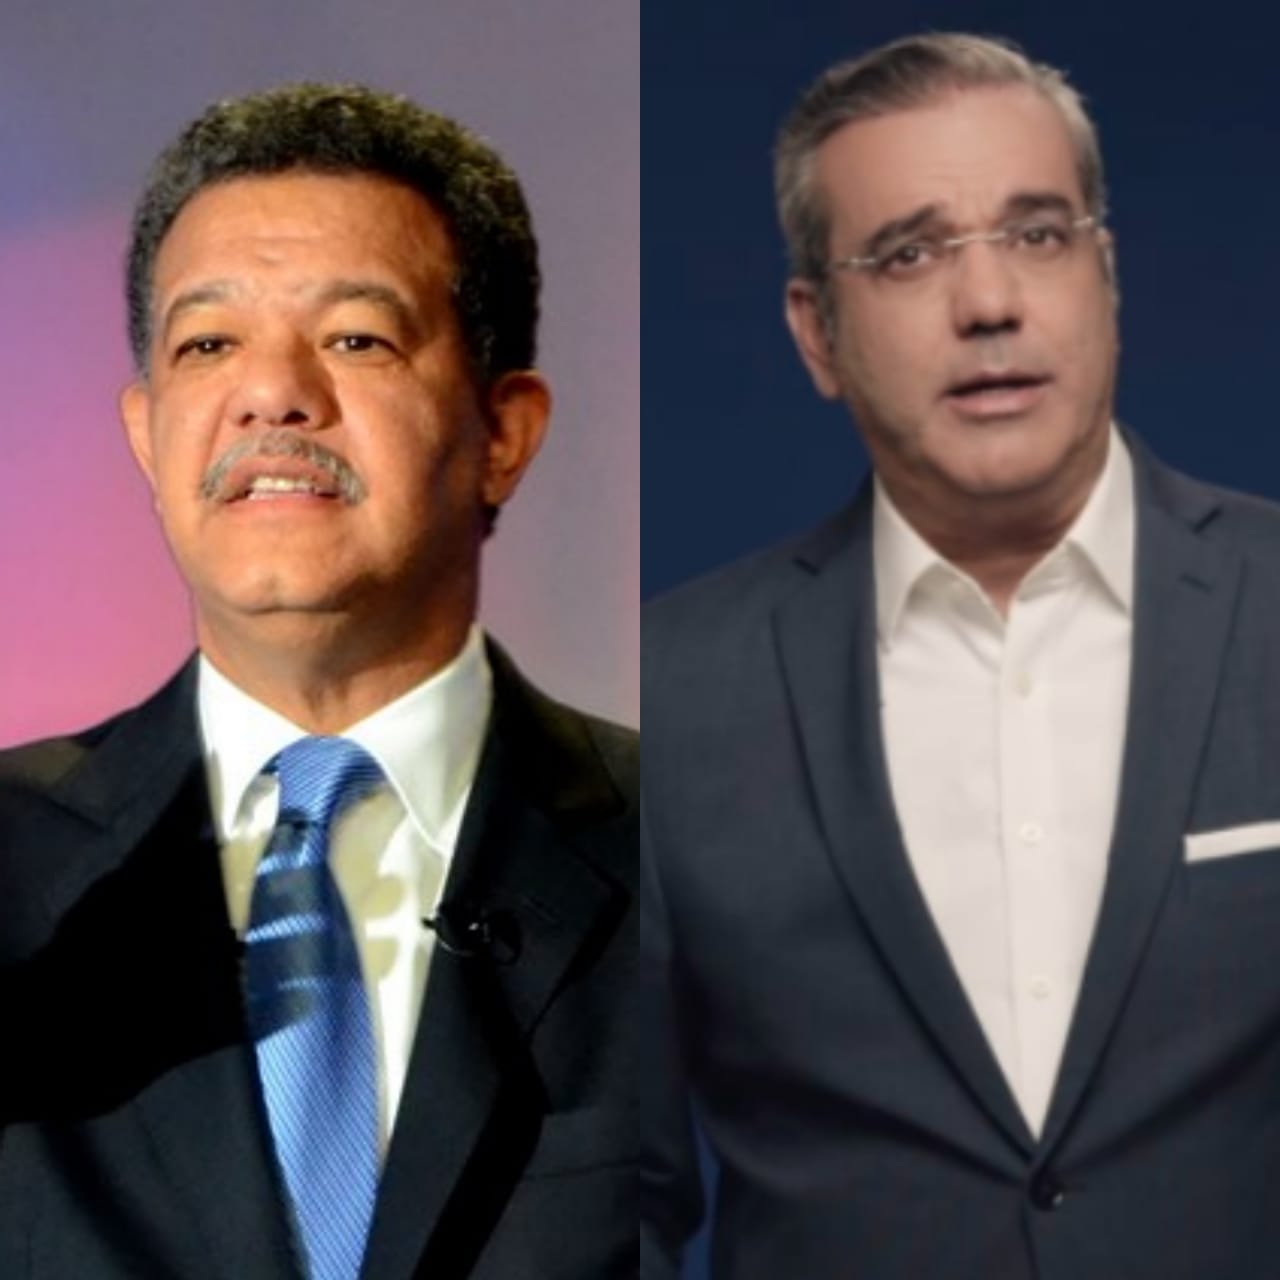 Leonel Fernández y Luis Abinader lideran en la carrera electoral del 2020 según encuesta